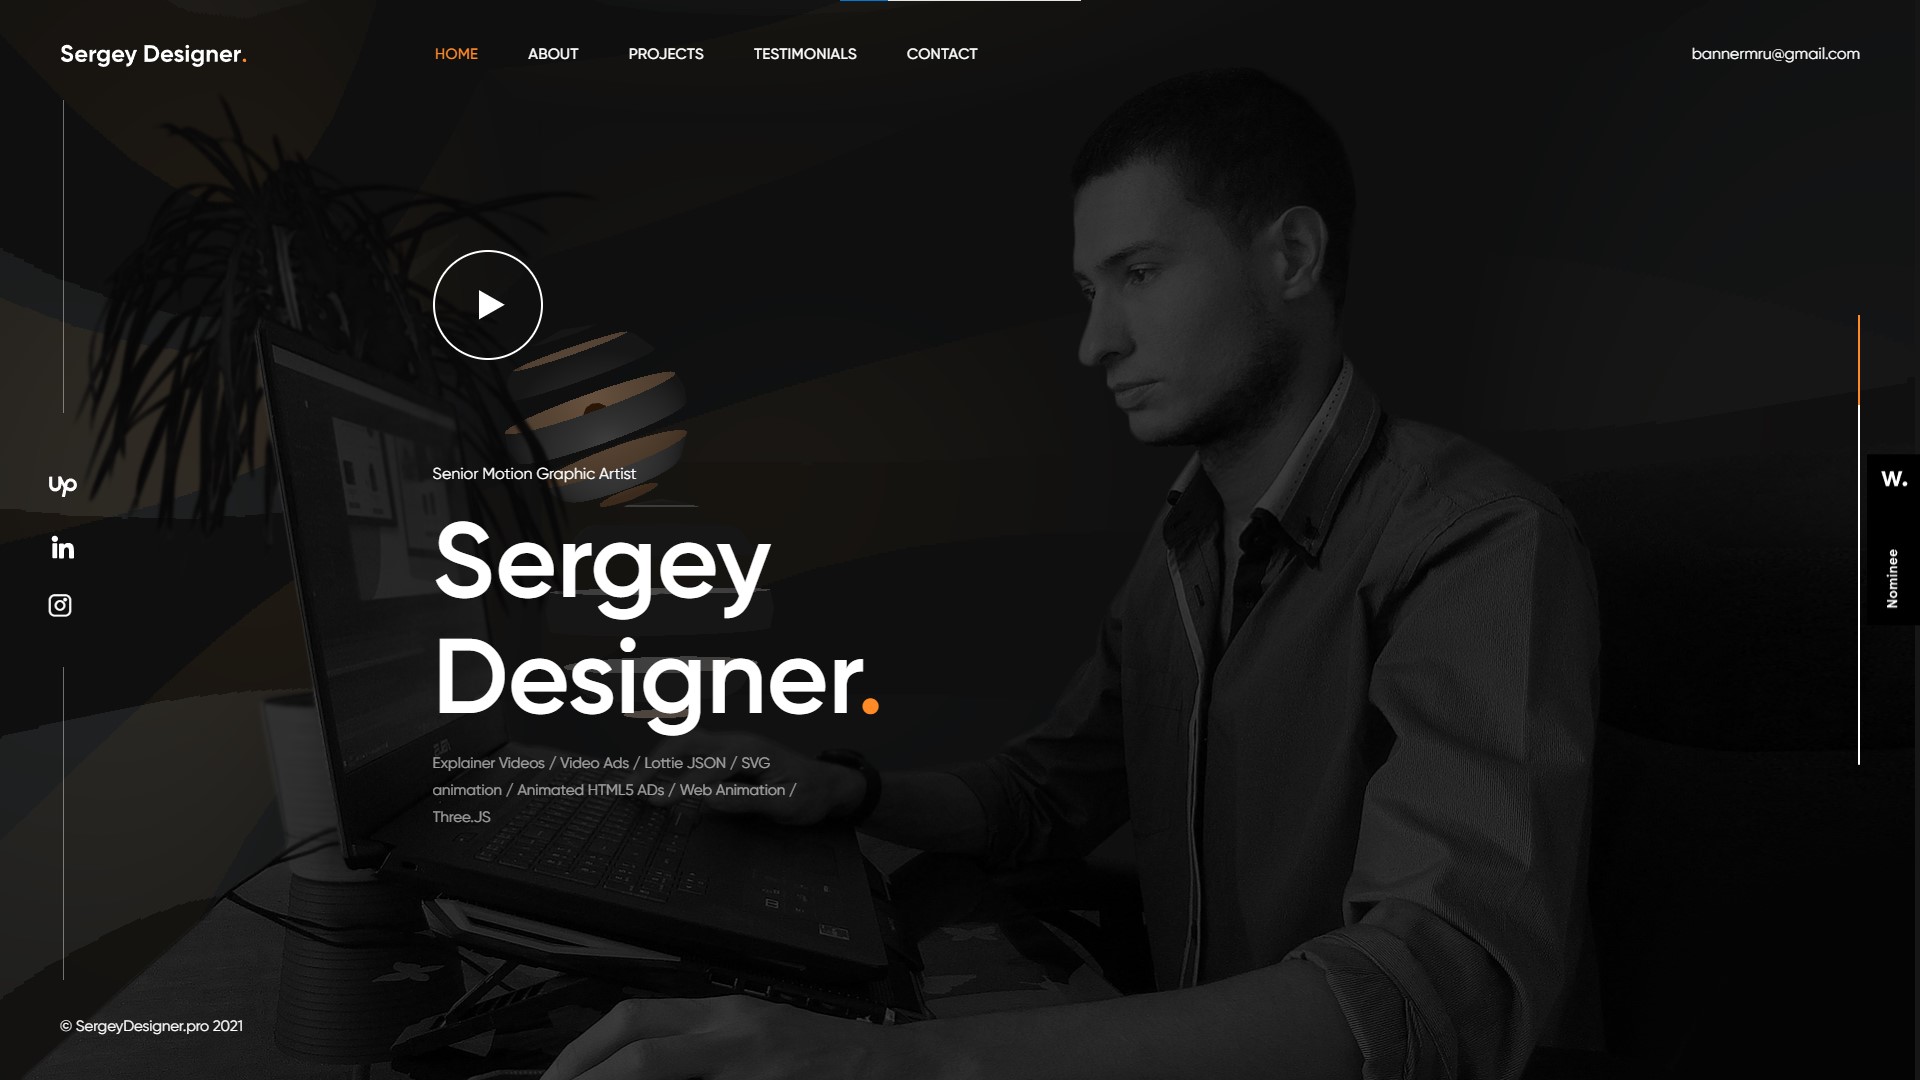 Sergey designer 1 71481e1234df97e93f31e3e7d286c6a6